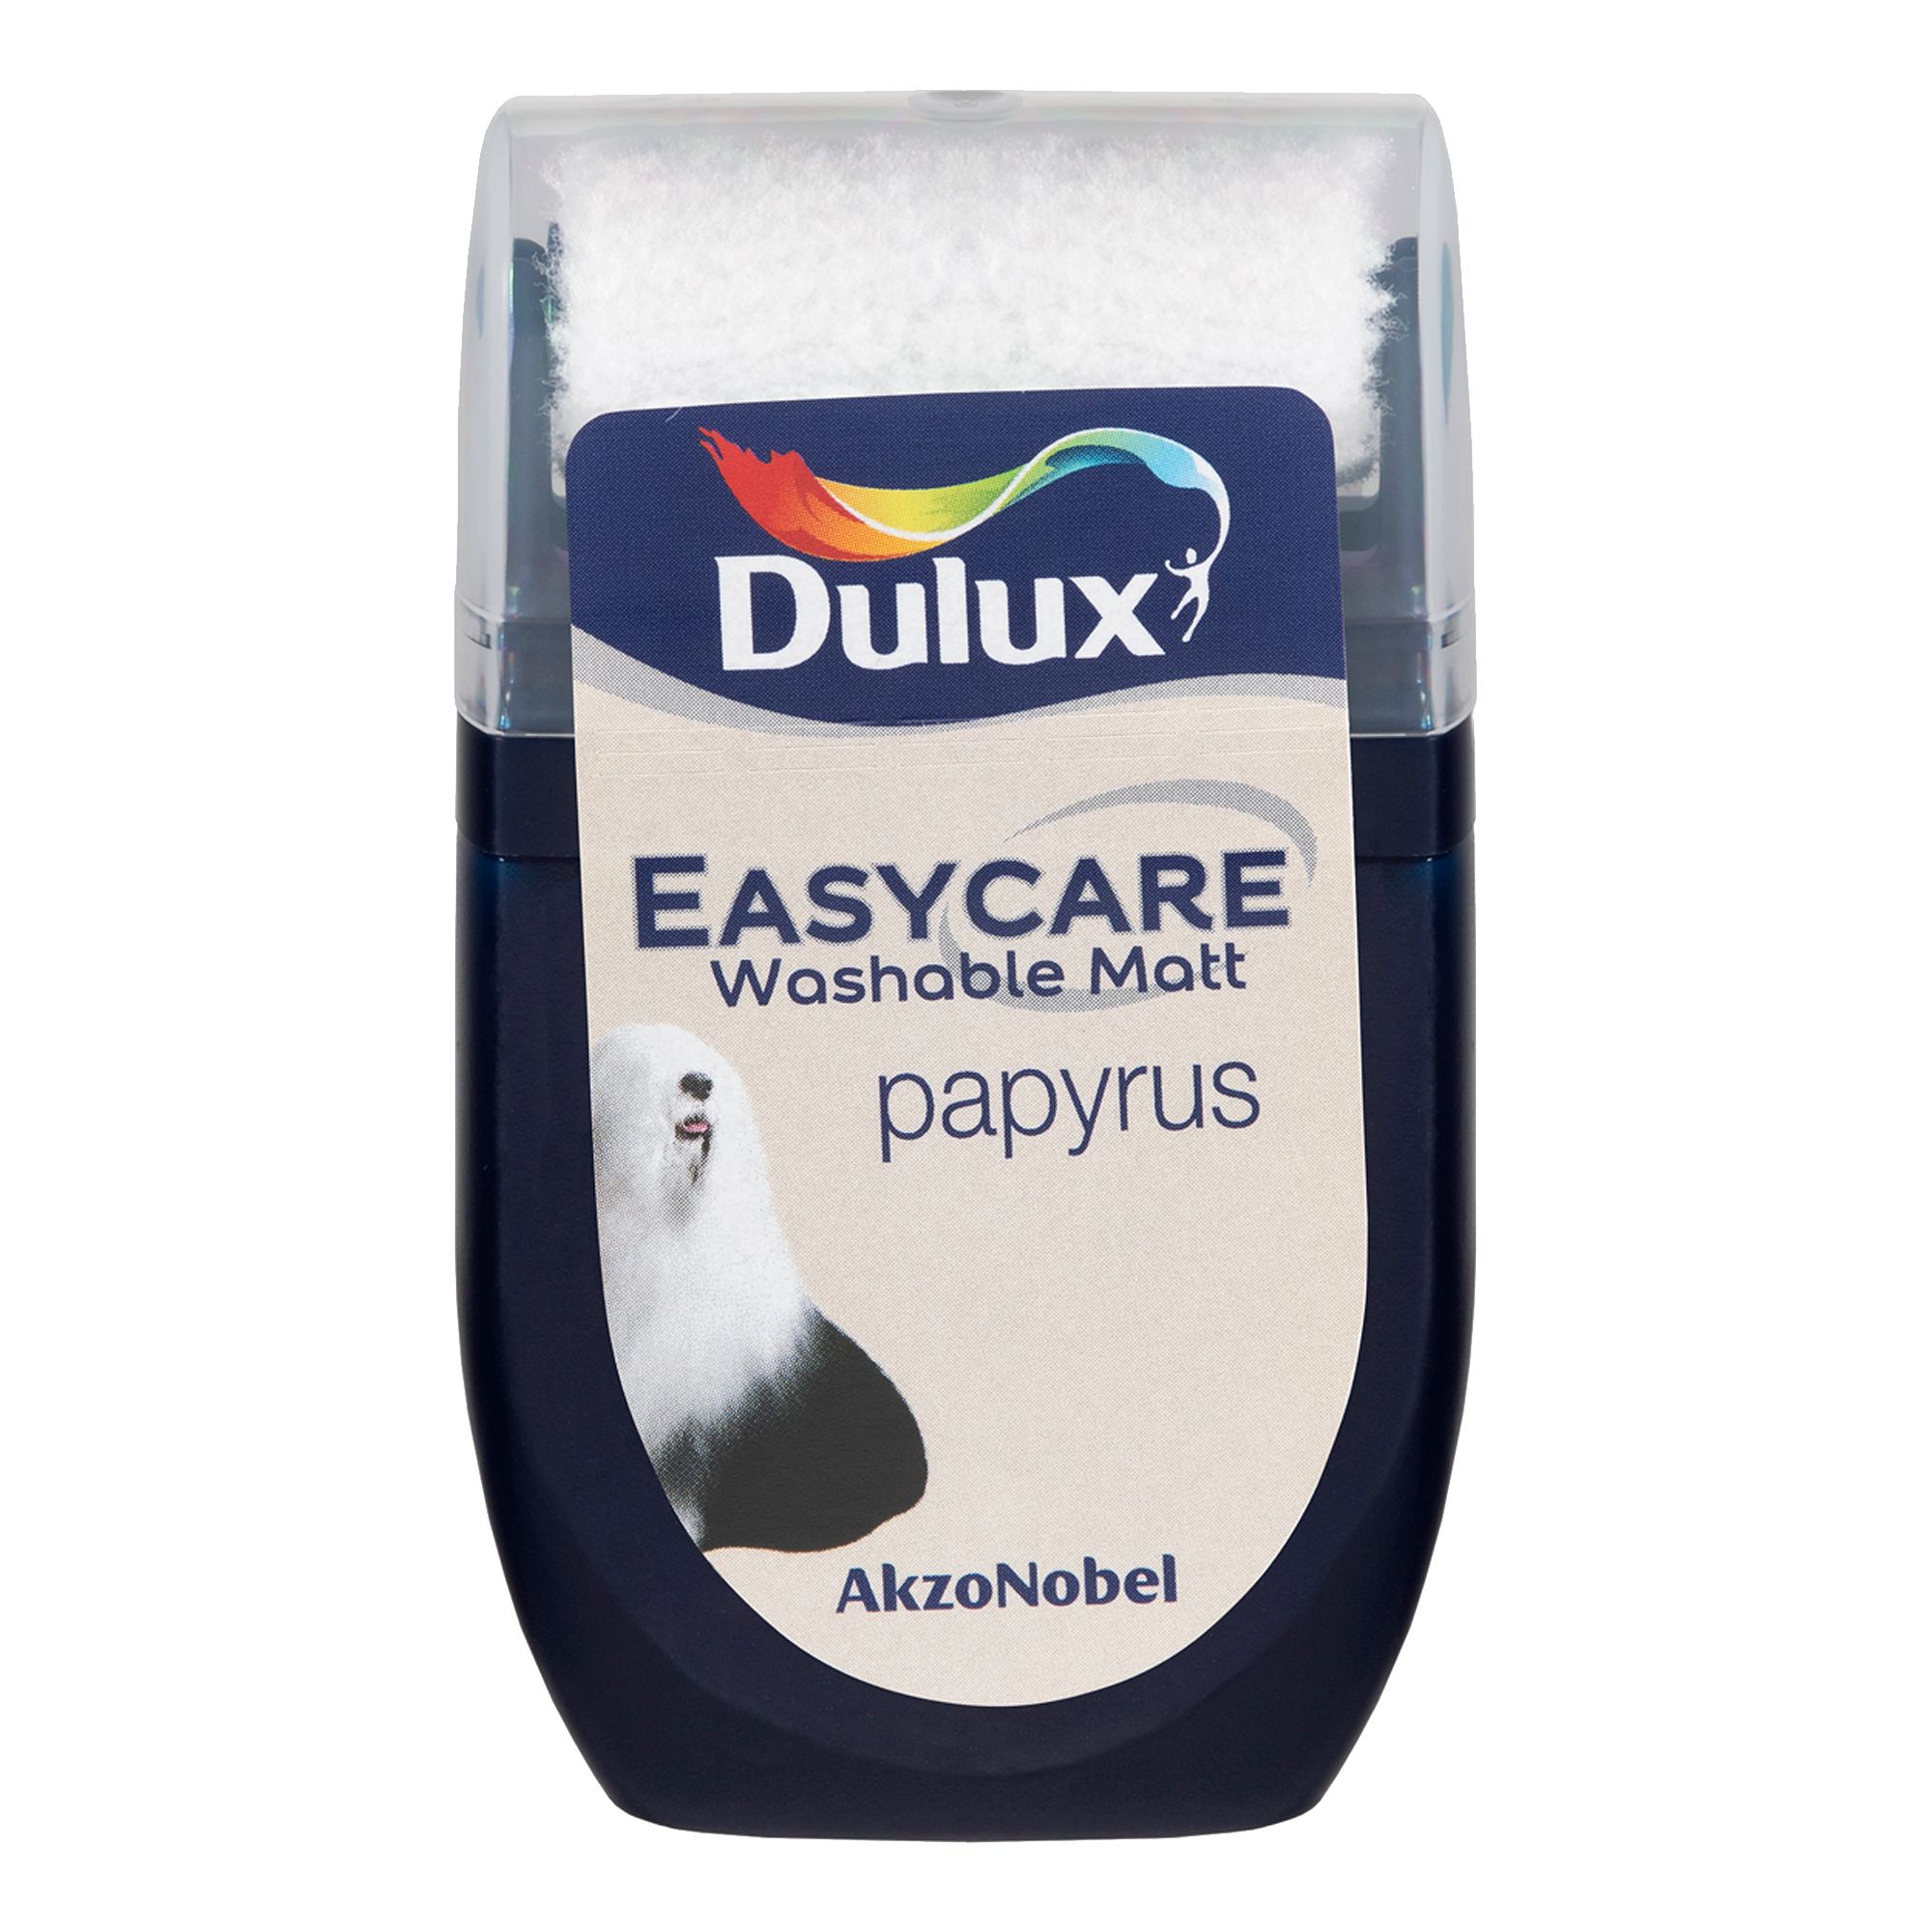 Dulux Easycare Papyrus Flat matt Emulsion paint, 30ml